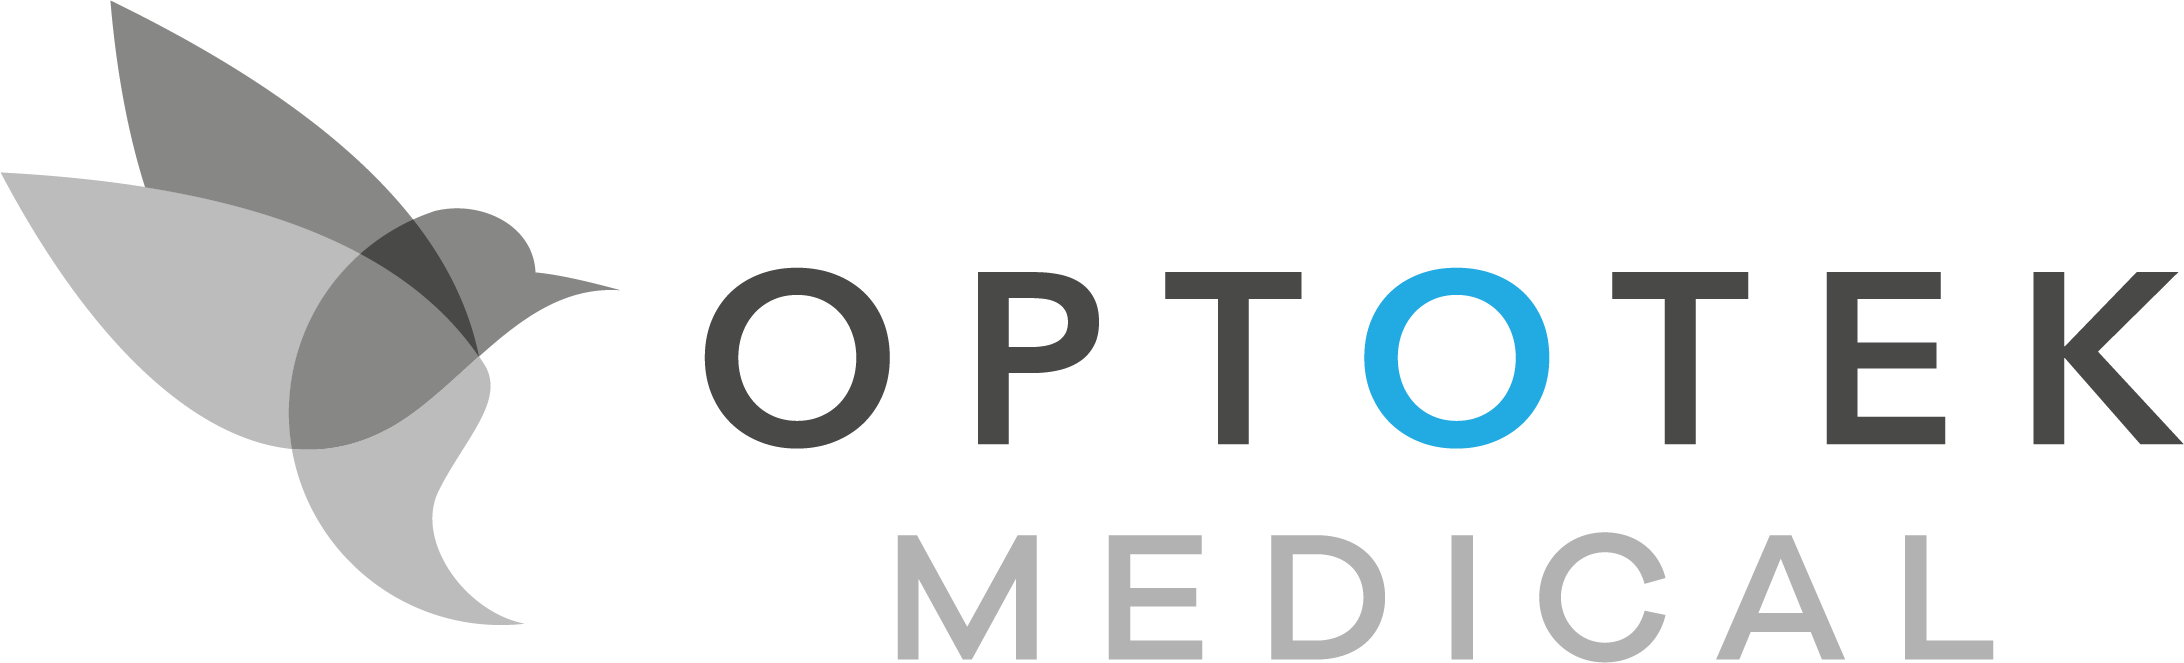 Optotek Medical